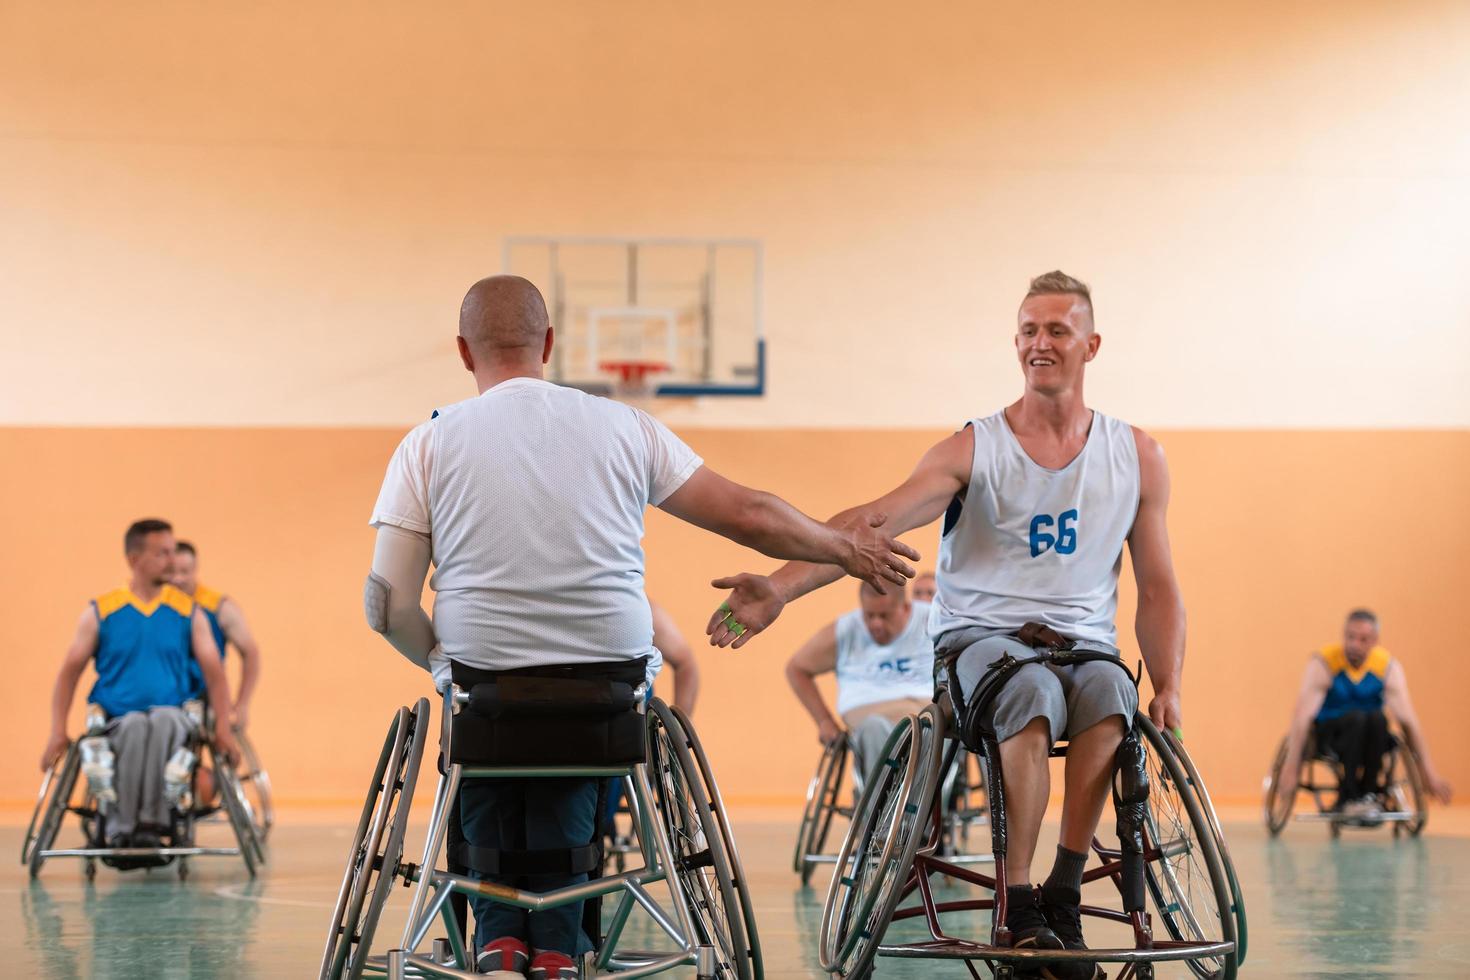 un equipo de veteranos de guerra en sillas de ruedas jugando baloncesto, celebrando los puntos ganados en un partido. choca esos cinco concepto foto